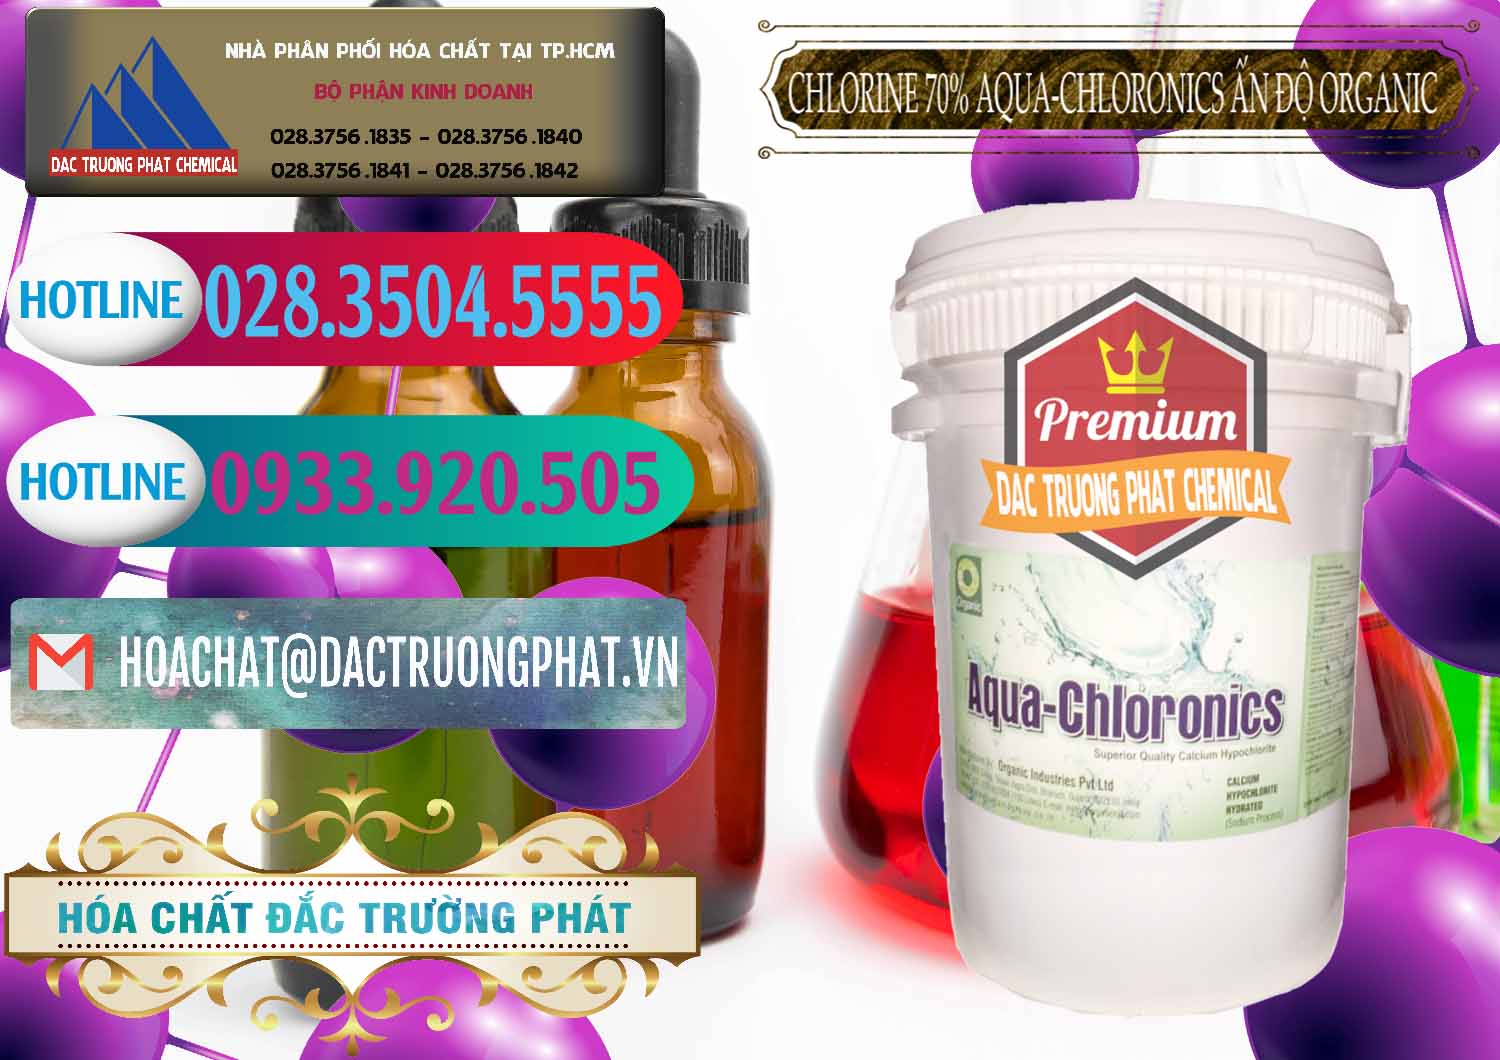 Cty chuyên phân phối _ bán Chlorine – Clorin 70% Aqua-Chloronics Ấn Độ Organic India - 0211 - Chuyên phân phối và cung cấp hóa chất tại TP.HCM - truongphat.vn